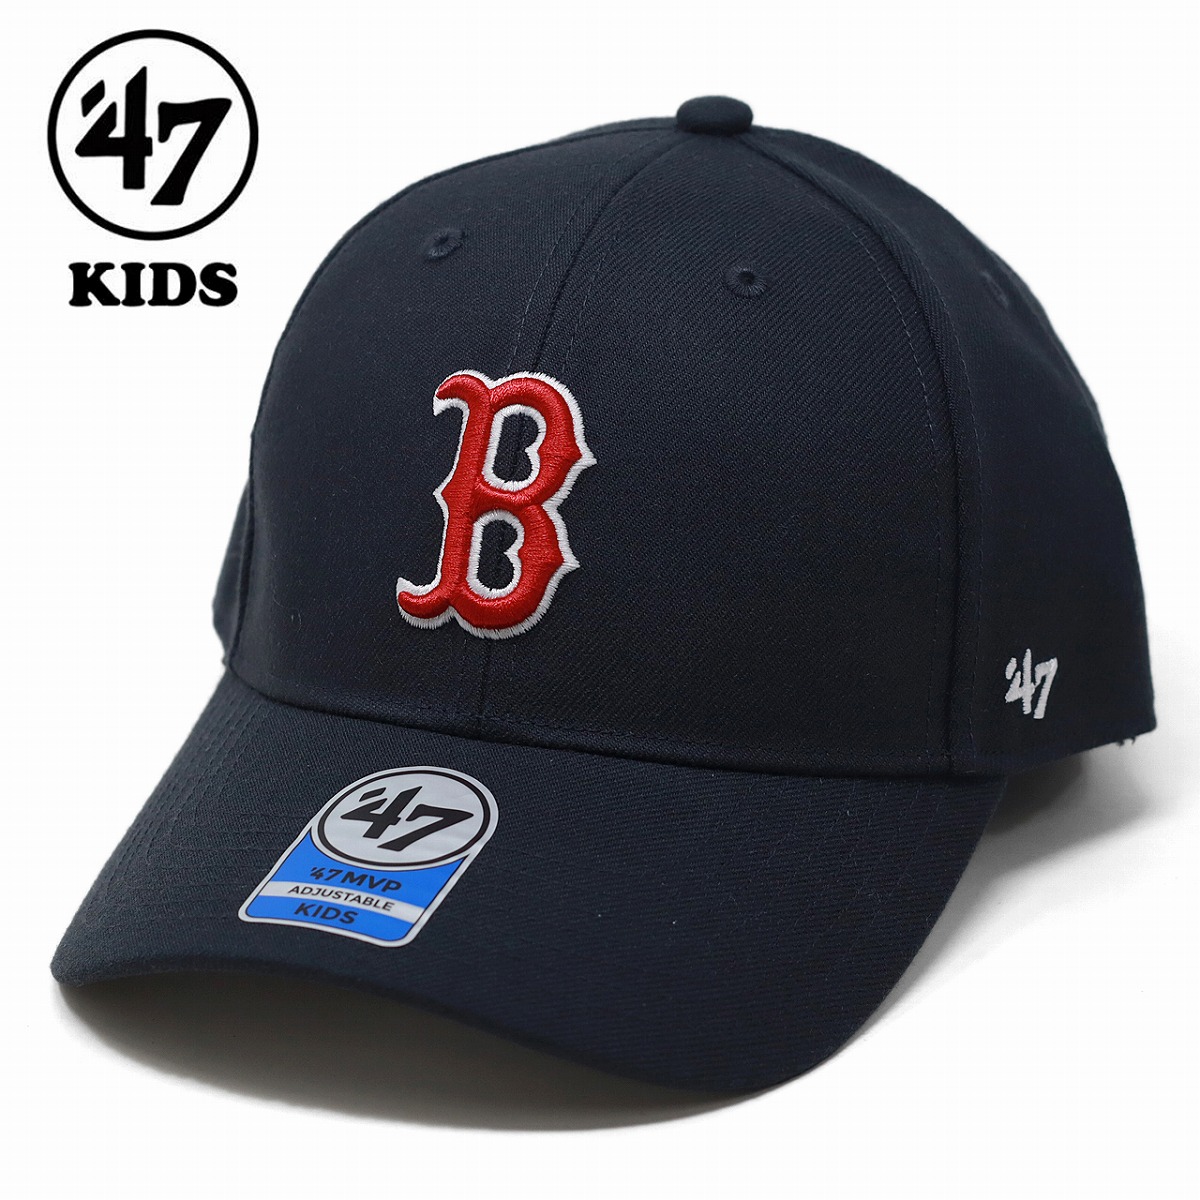 キッズ キャップ KIDS メジャーリーグ ボストン・レッドソックス レッドソックス 47brand Red Sox Home Kids '47 MVP ネイビー 子供 ギフト 誕生日 プレゼント ラッピング無料 [ baseball cap ]画像